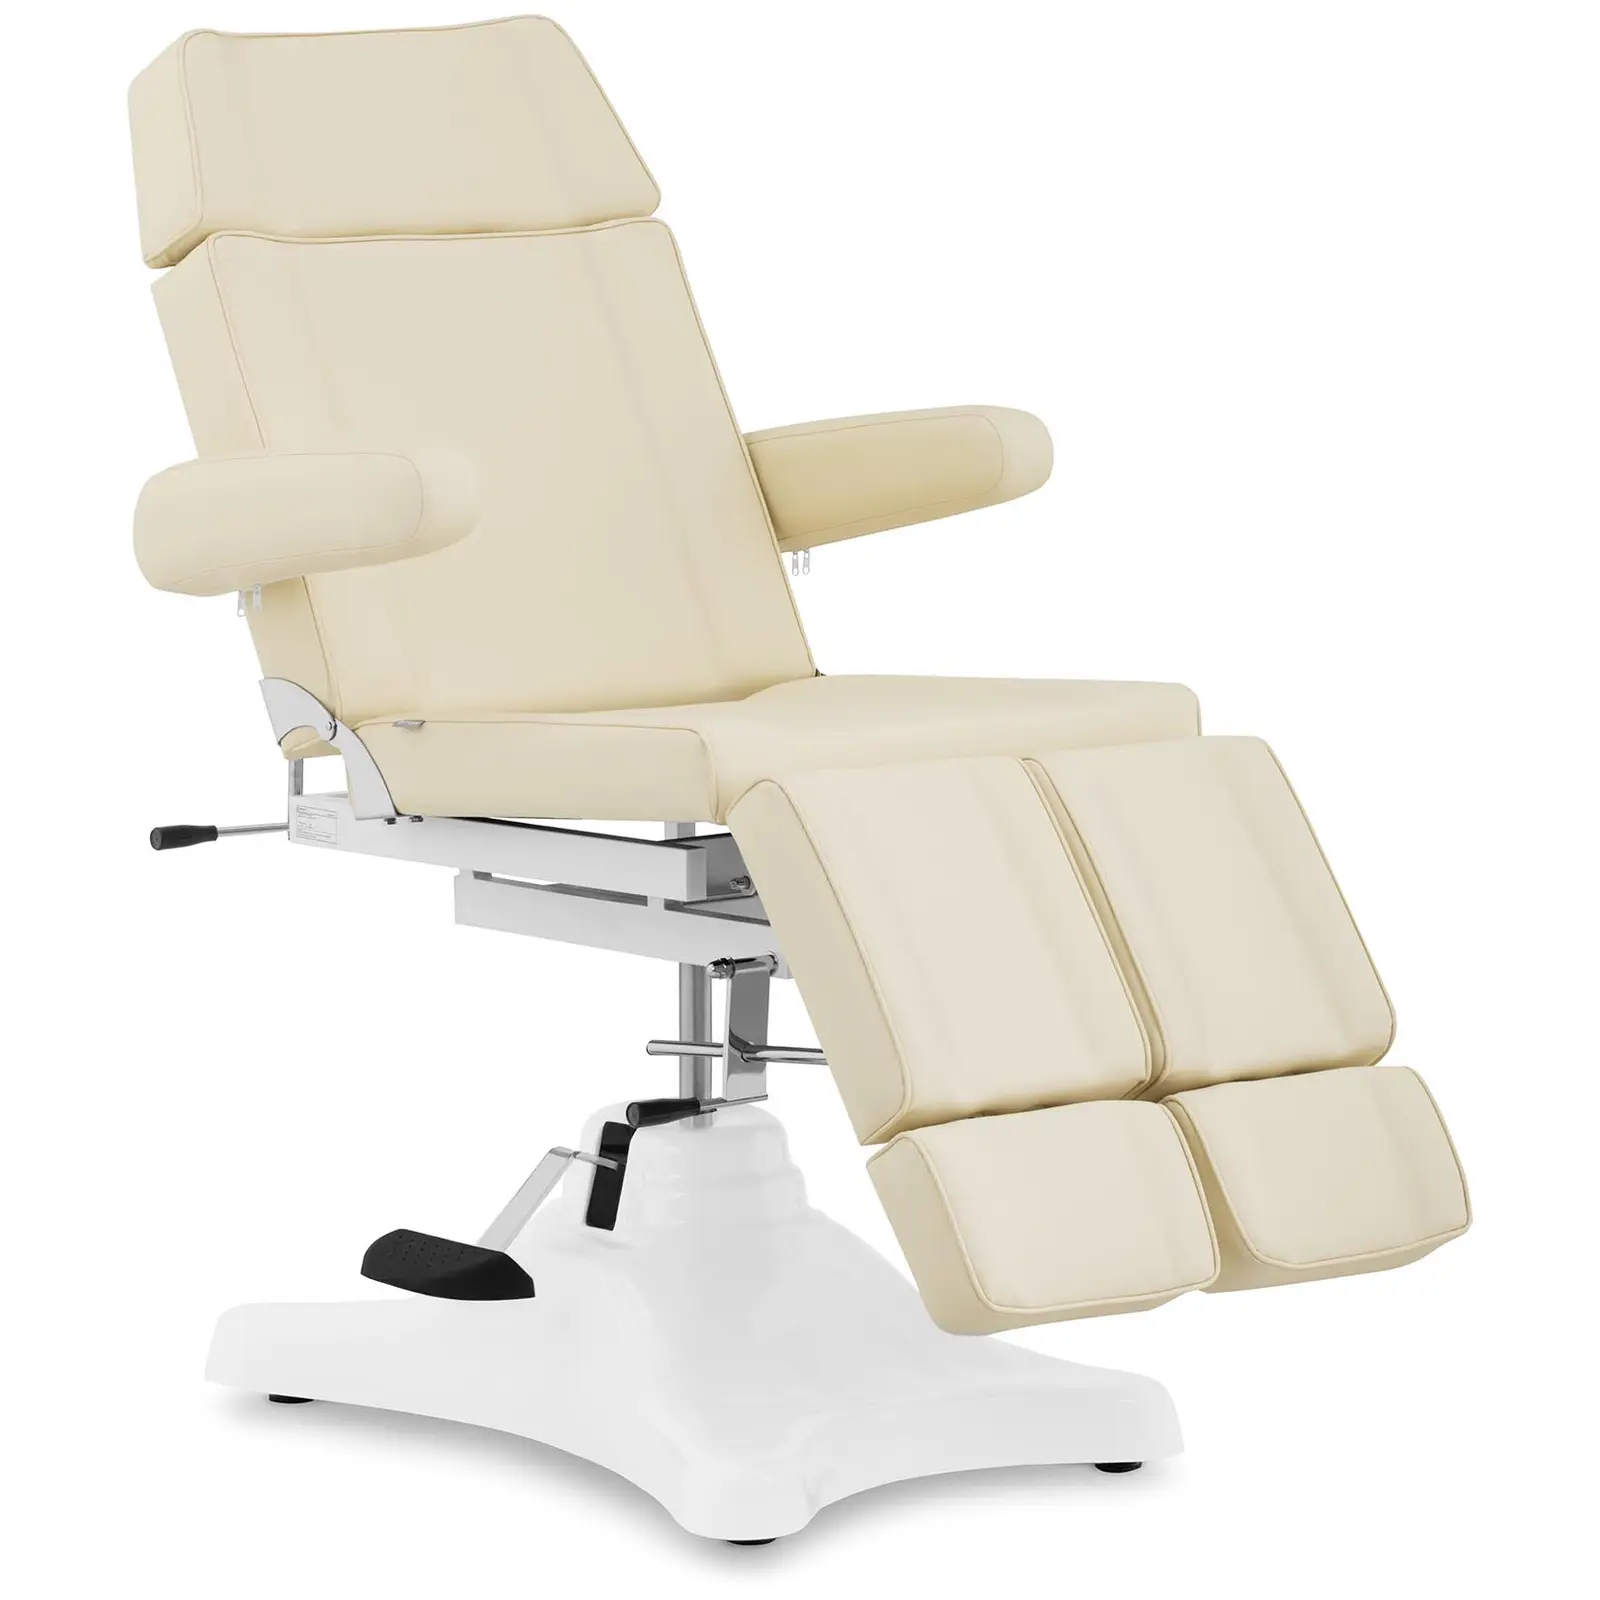 Hydraulic Pedicure Chair - 197 x 61.5 x 61 cm - 200 kg - Beige